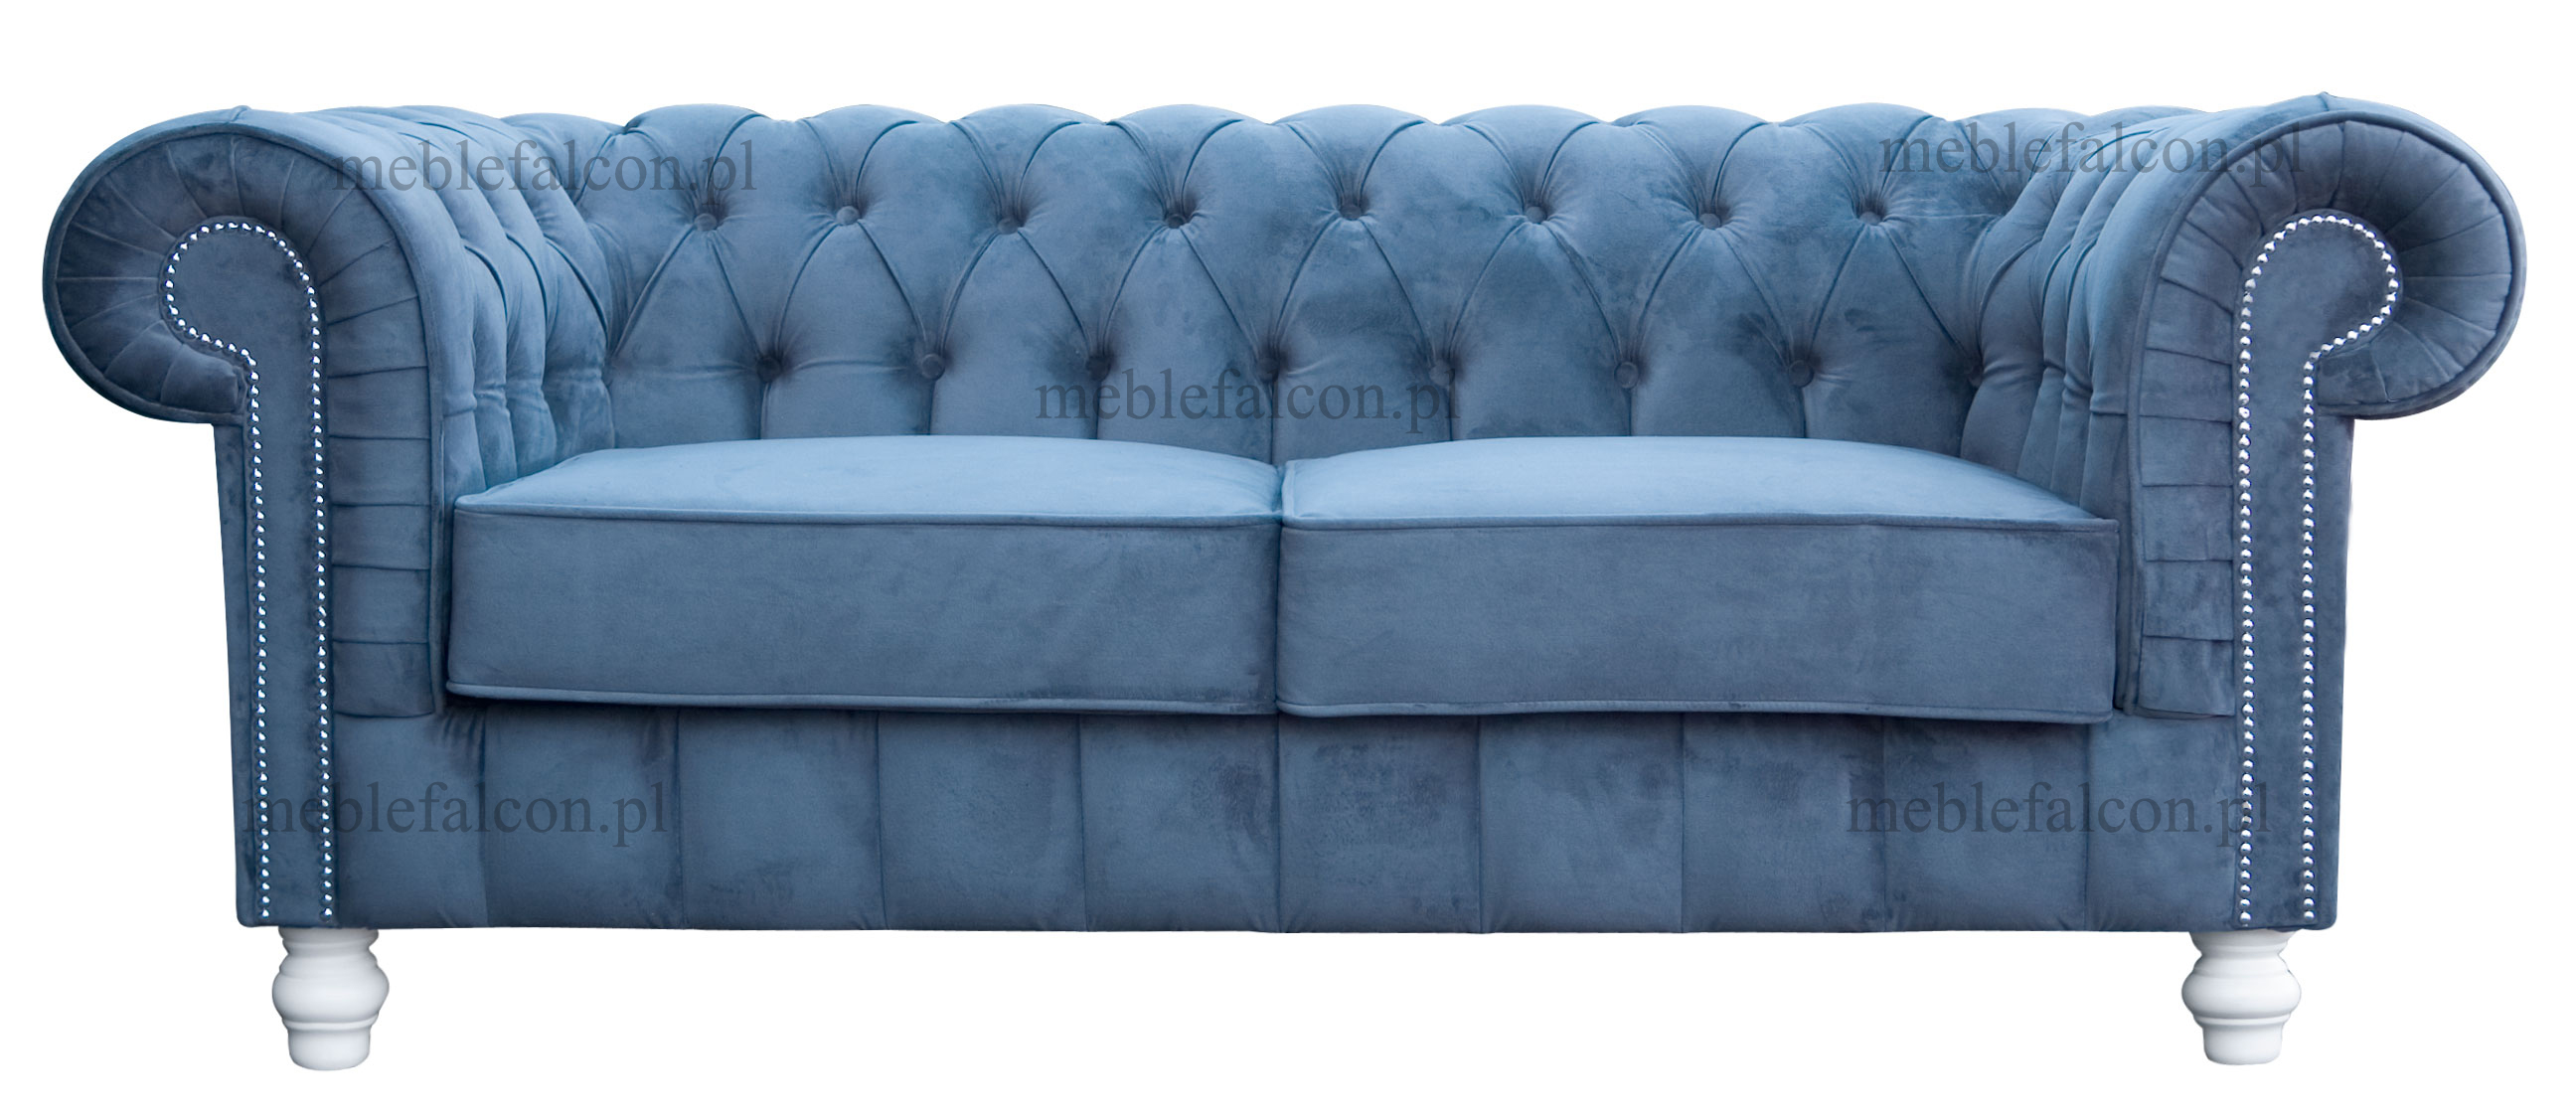 wyrafinowana piękna i wygodna sofa w plamoodpornym materiale sofa pluszowa koloru niebieskiego 